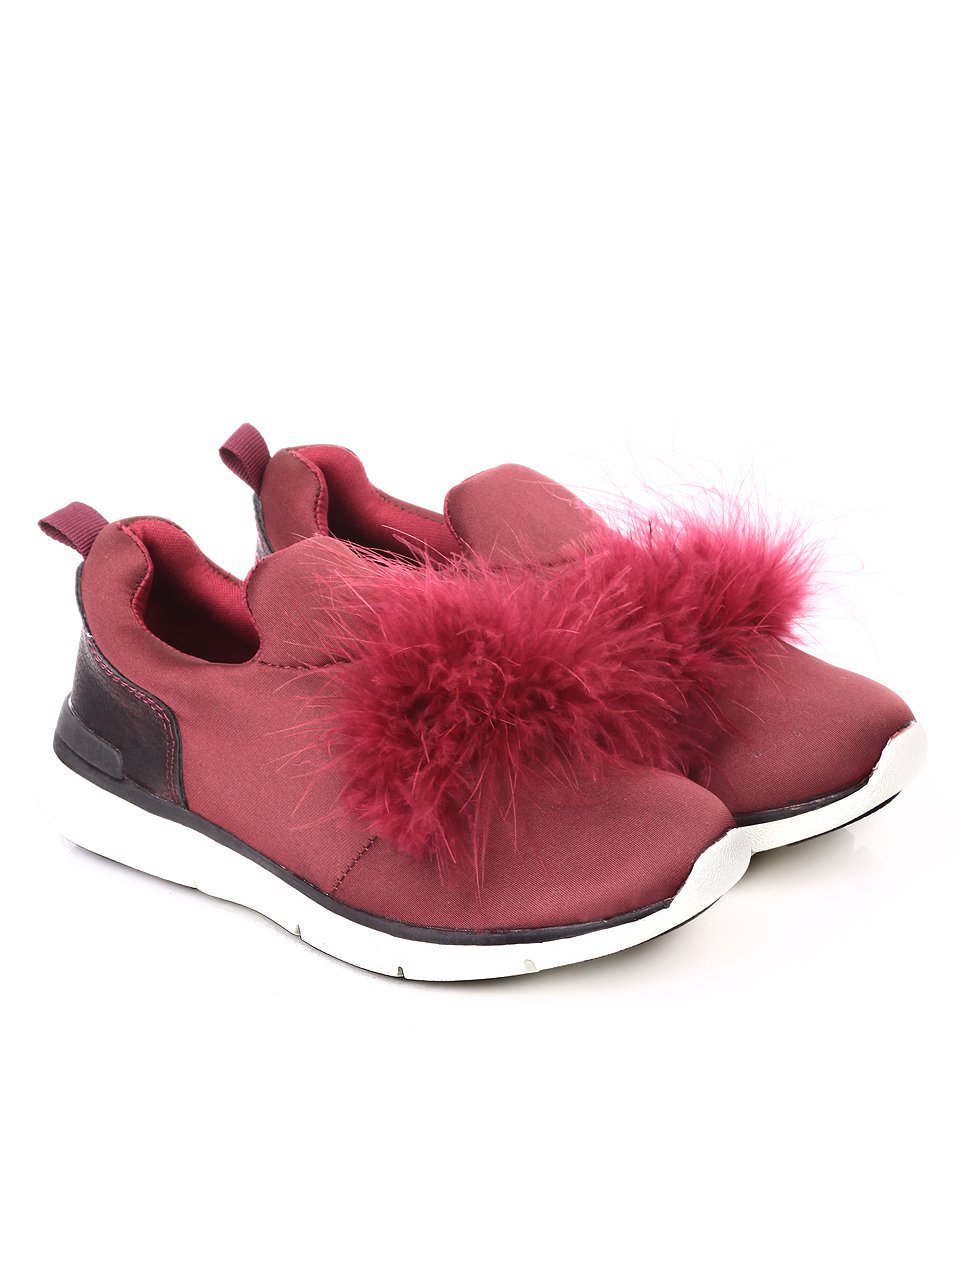 Ежедневни детски обувки с естествен пух в червено 18P-17709 burgundy